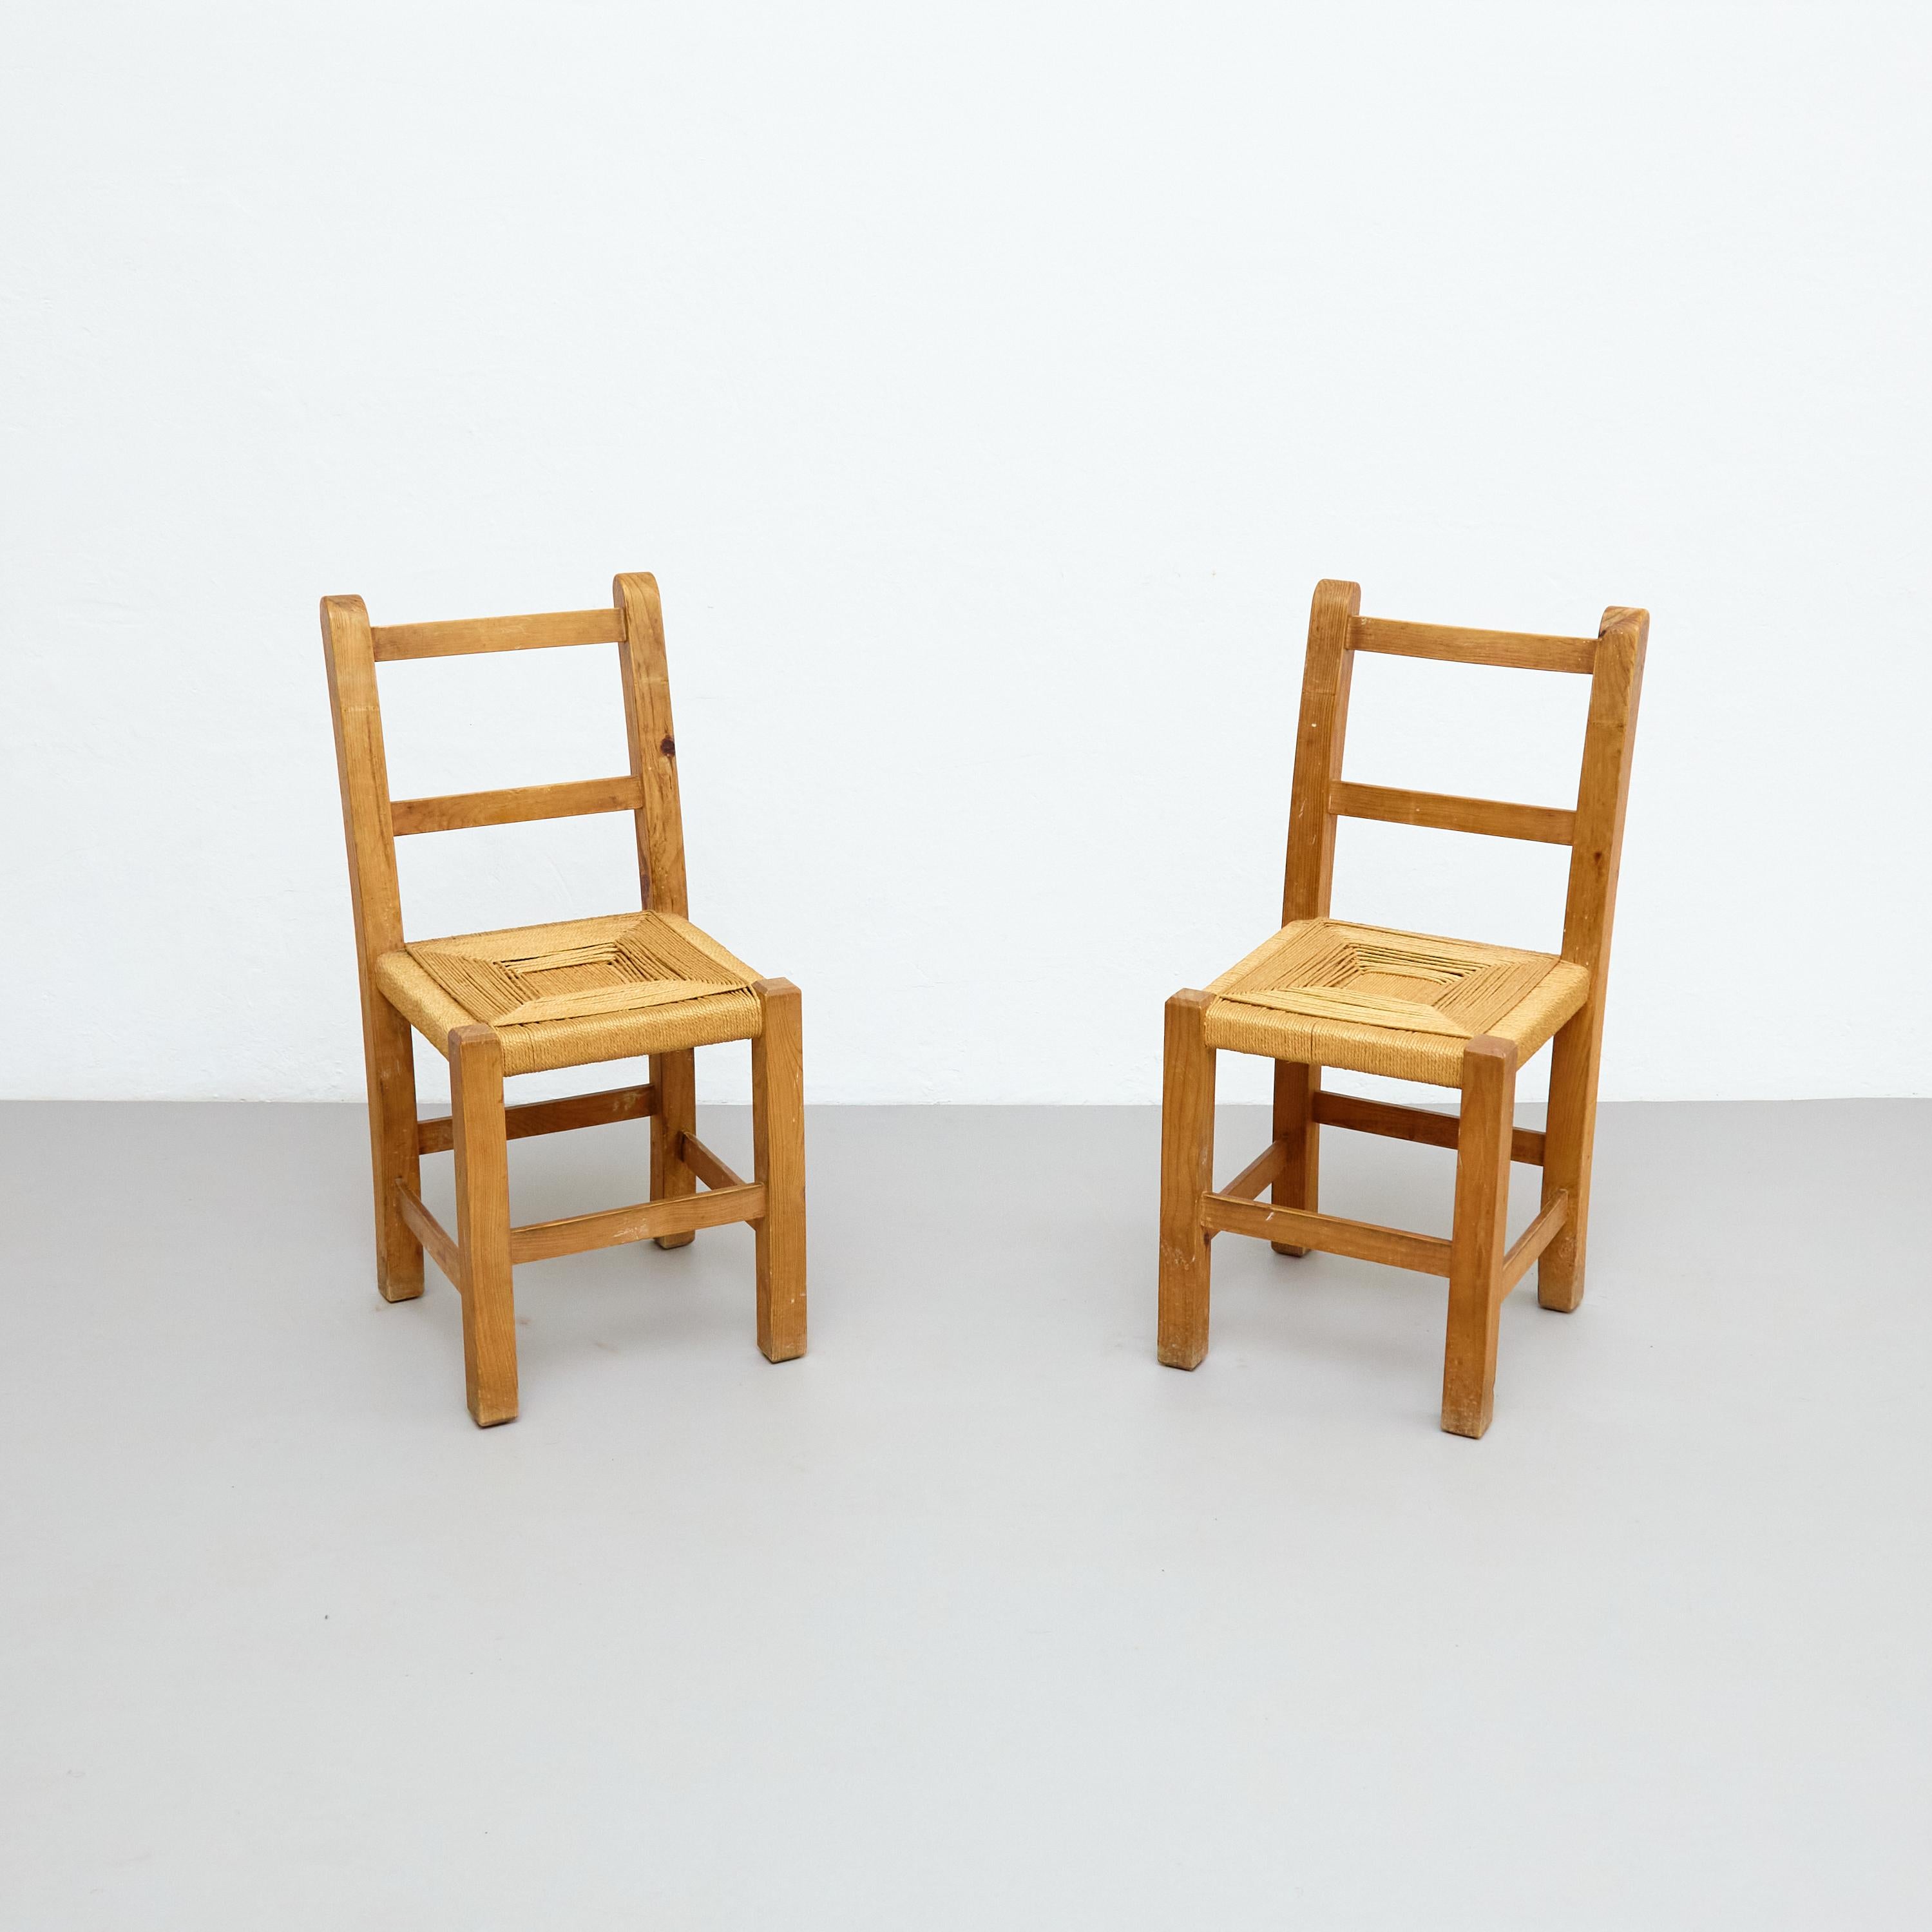 Mid Century Modern Holz und Rattan Französisch Rationalist Stühle, von unbekannten Designer.

Hergestellt in Frankreich, um 1950.

In ursprünglichem Zustand mit geringen Gebrauchsspuren, die dem Alter und dem Gebrauch entsprechen, wobei eine schöne